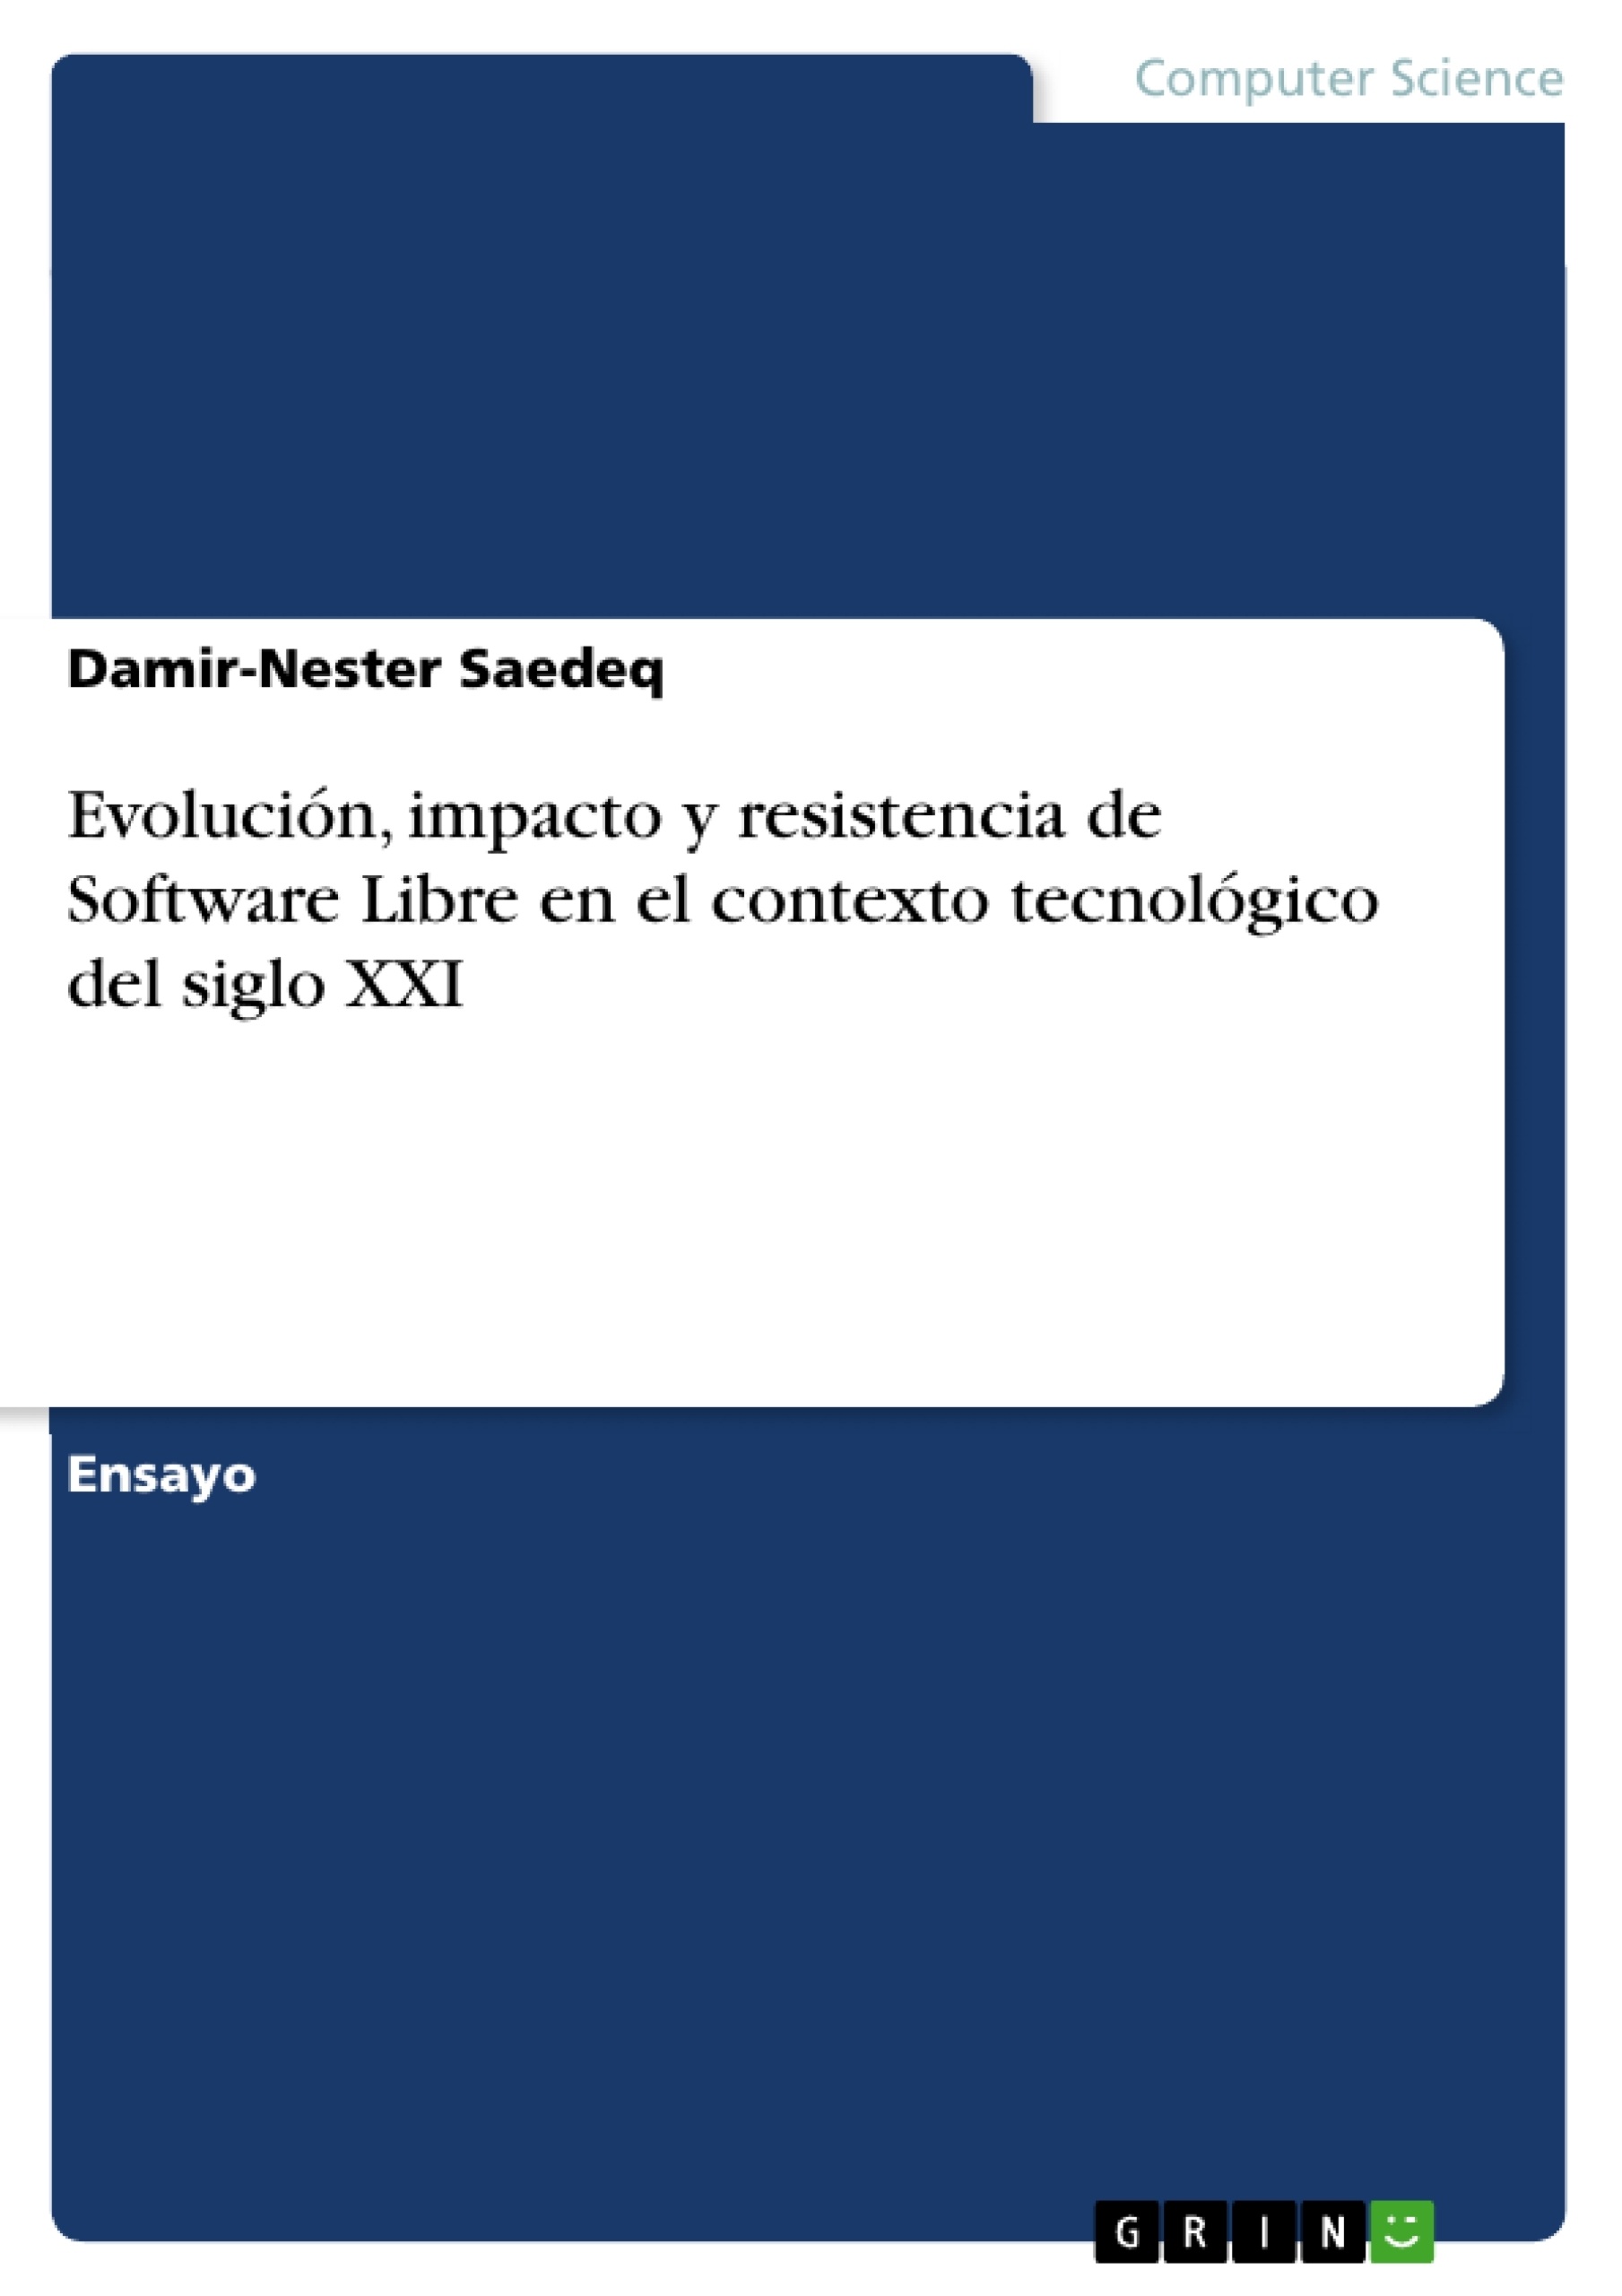 Título: Evolución, impacto y resistencia de Software Libre en el contexto tecnológico del siglo XXI